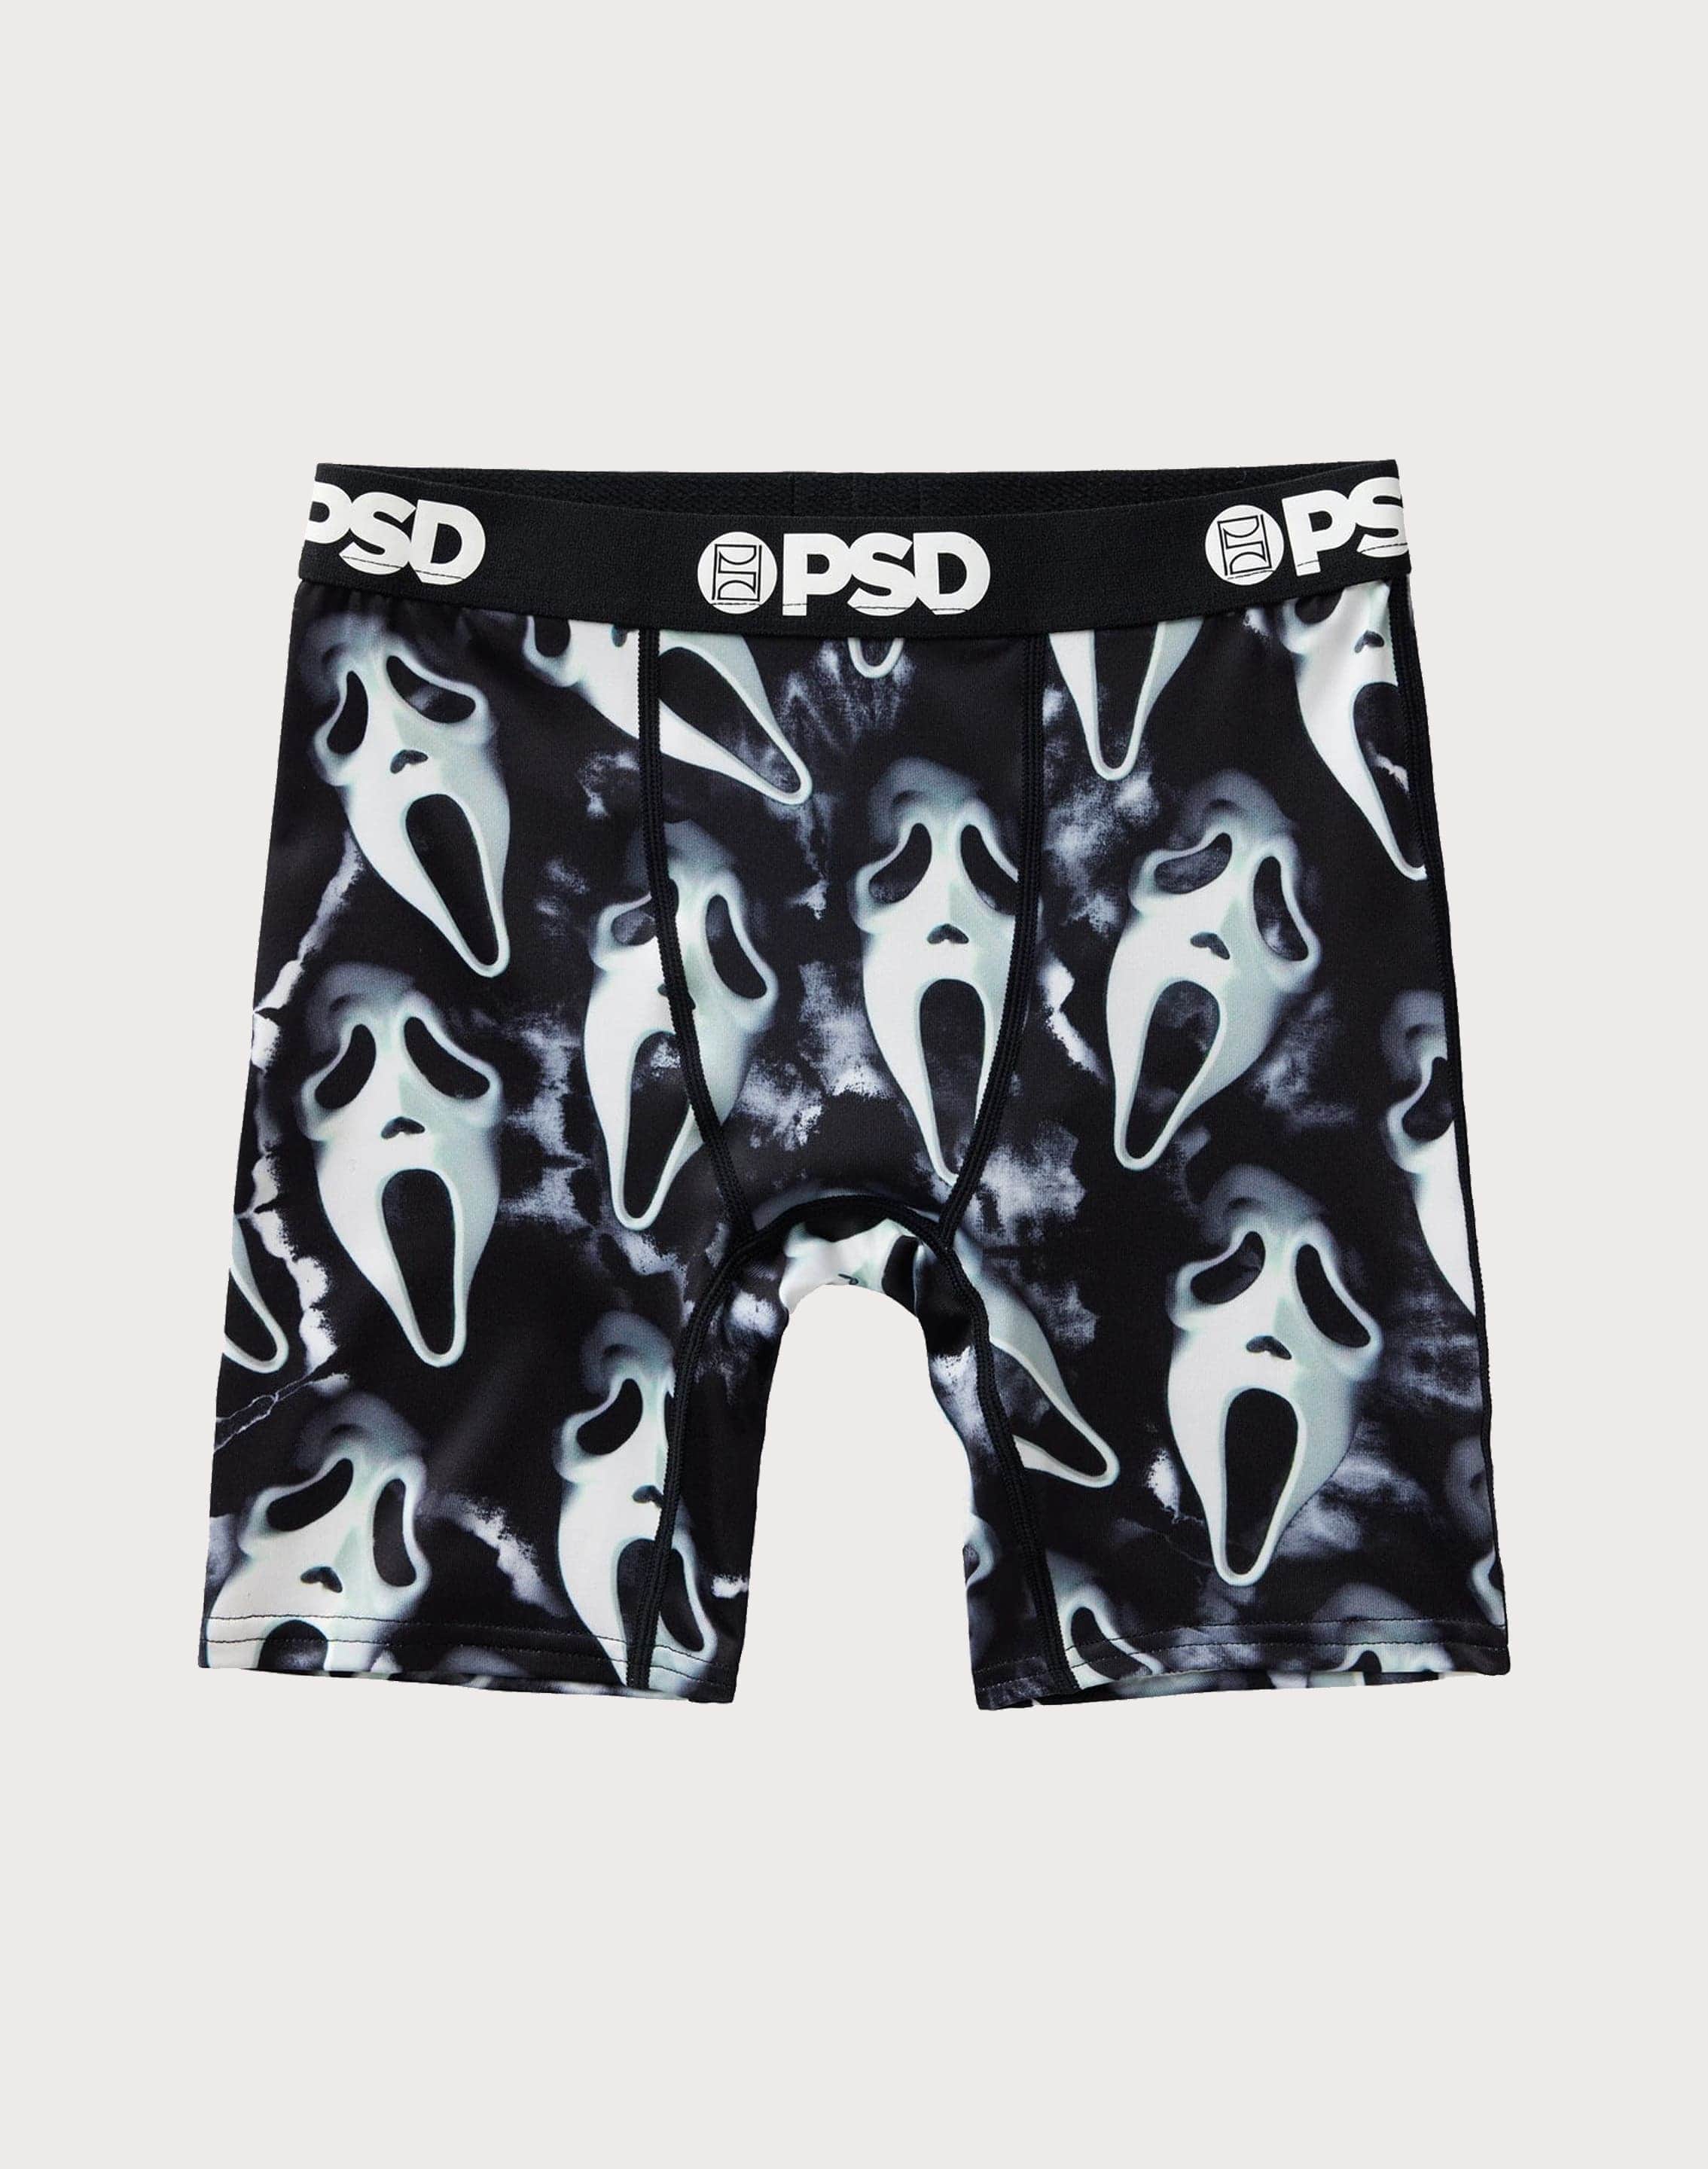 Psd Underwear Ghost Face Boxer Briefs